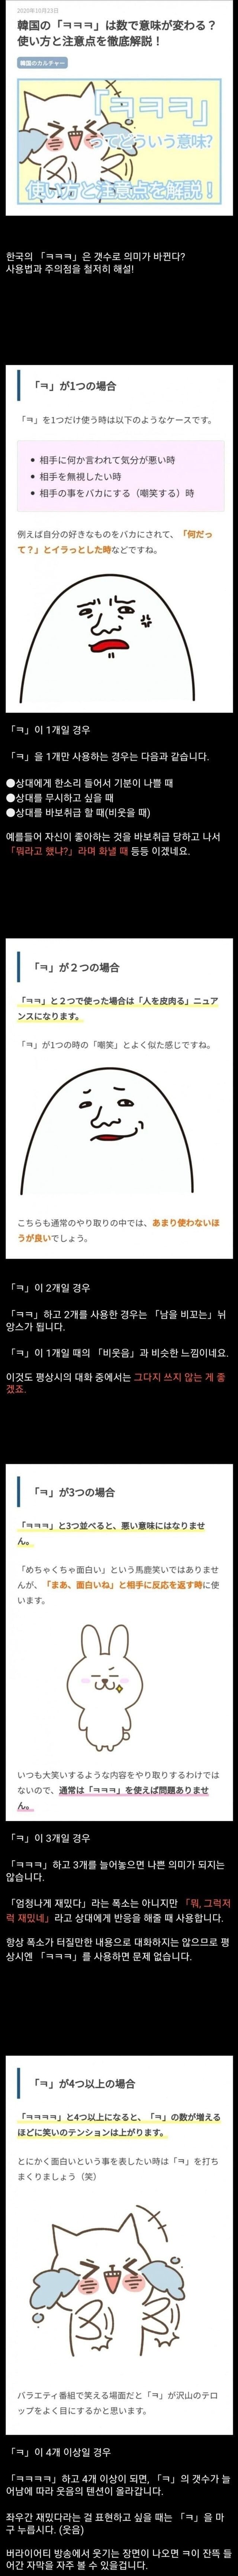 일본인이 분석한 “ㅋ”의 의미.jpg